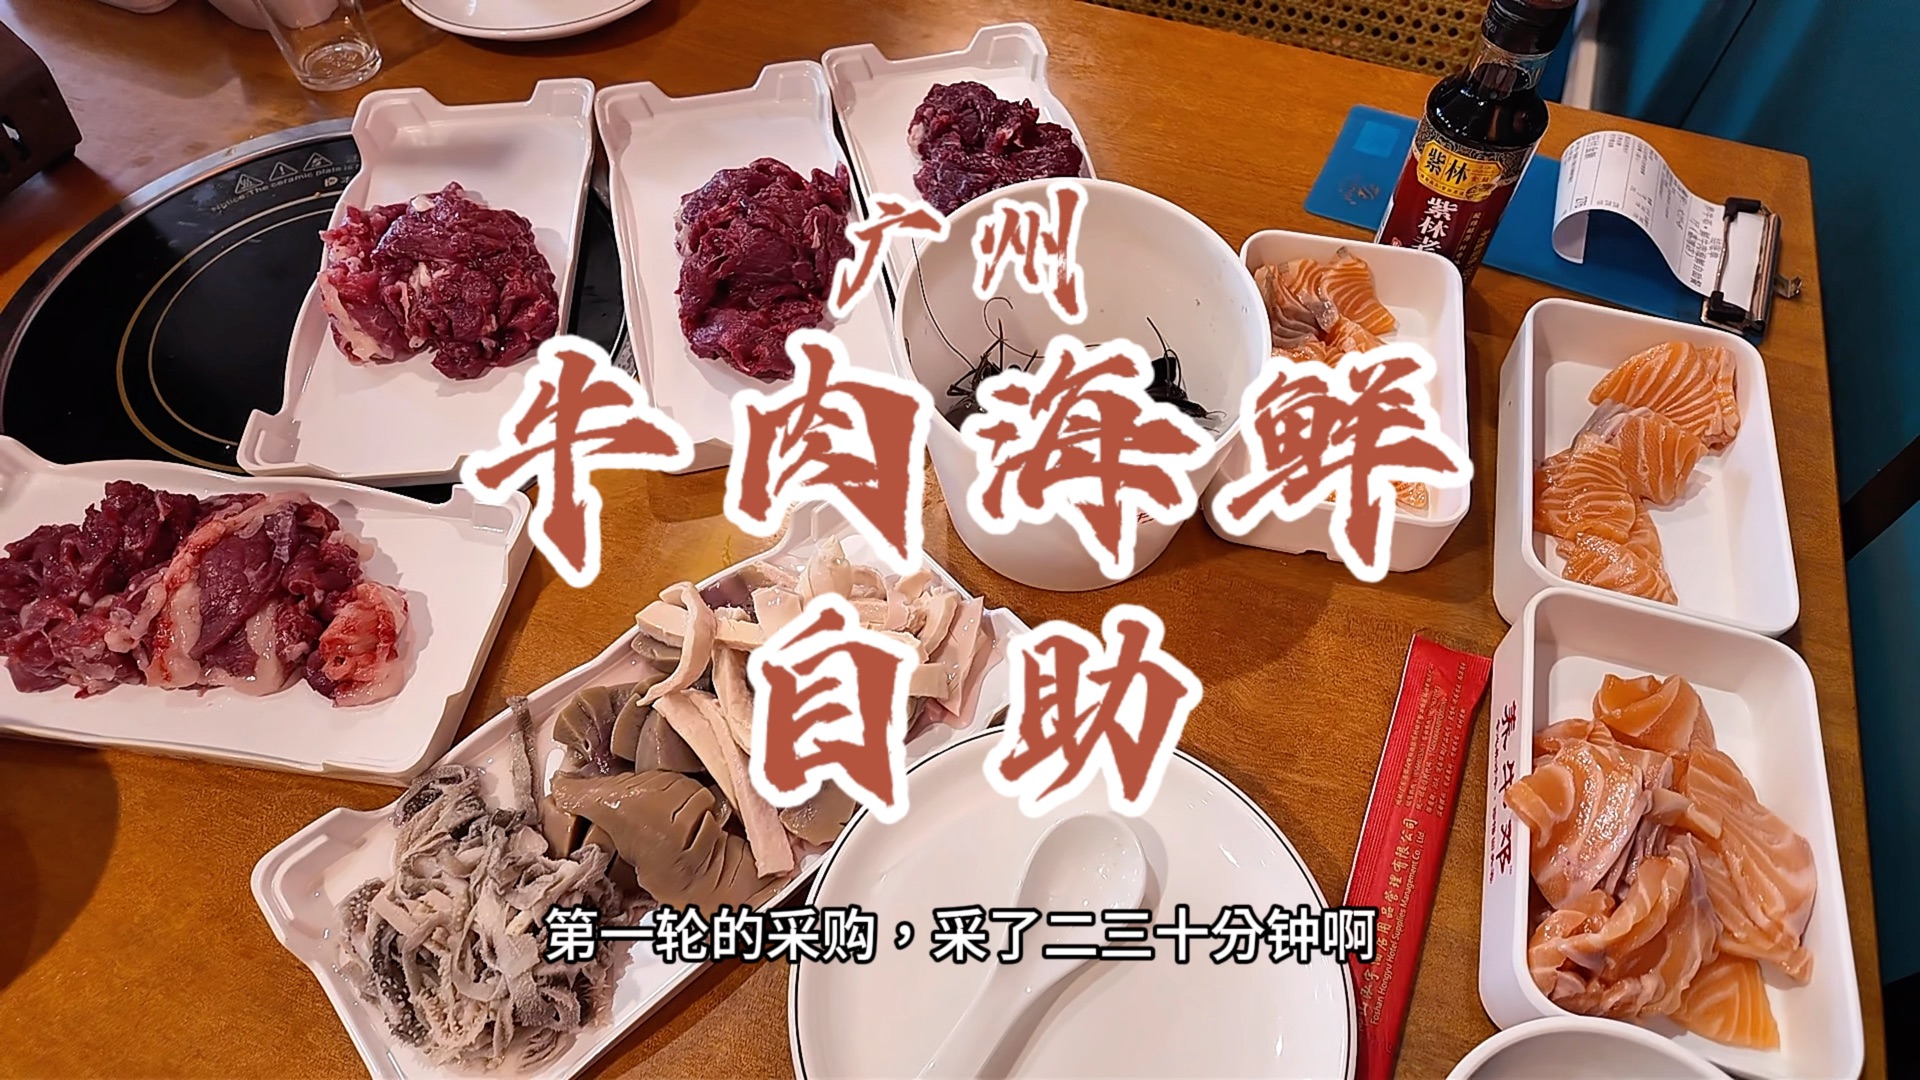 花69元在广州吃一顿焗桑拿般体验感的牛肉海鲜自助，这个价格居然还有三文鱼人任吃！单论食材，性价比很高。就是没服务没环境，太热了而且位置太窄。